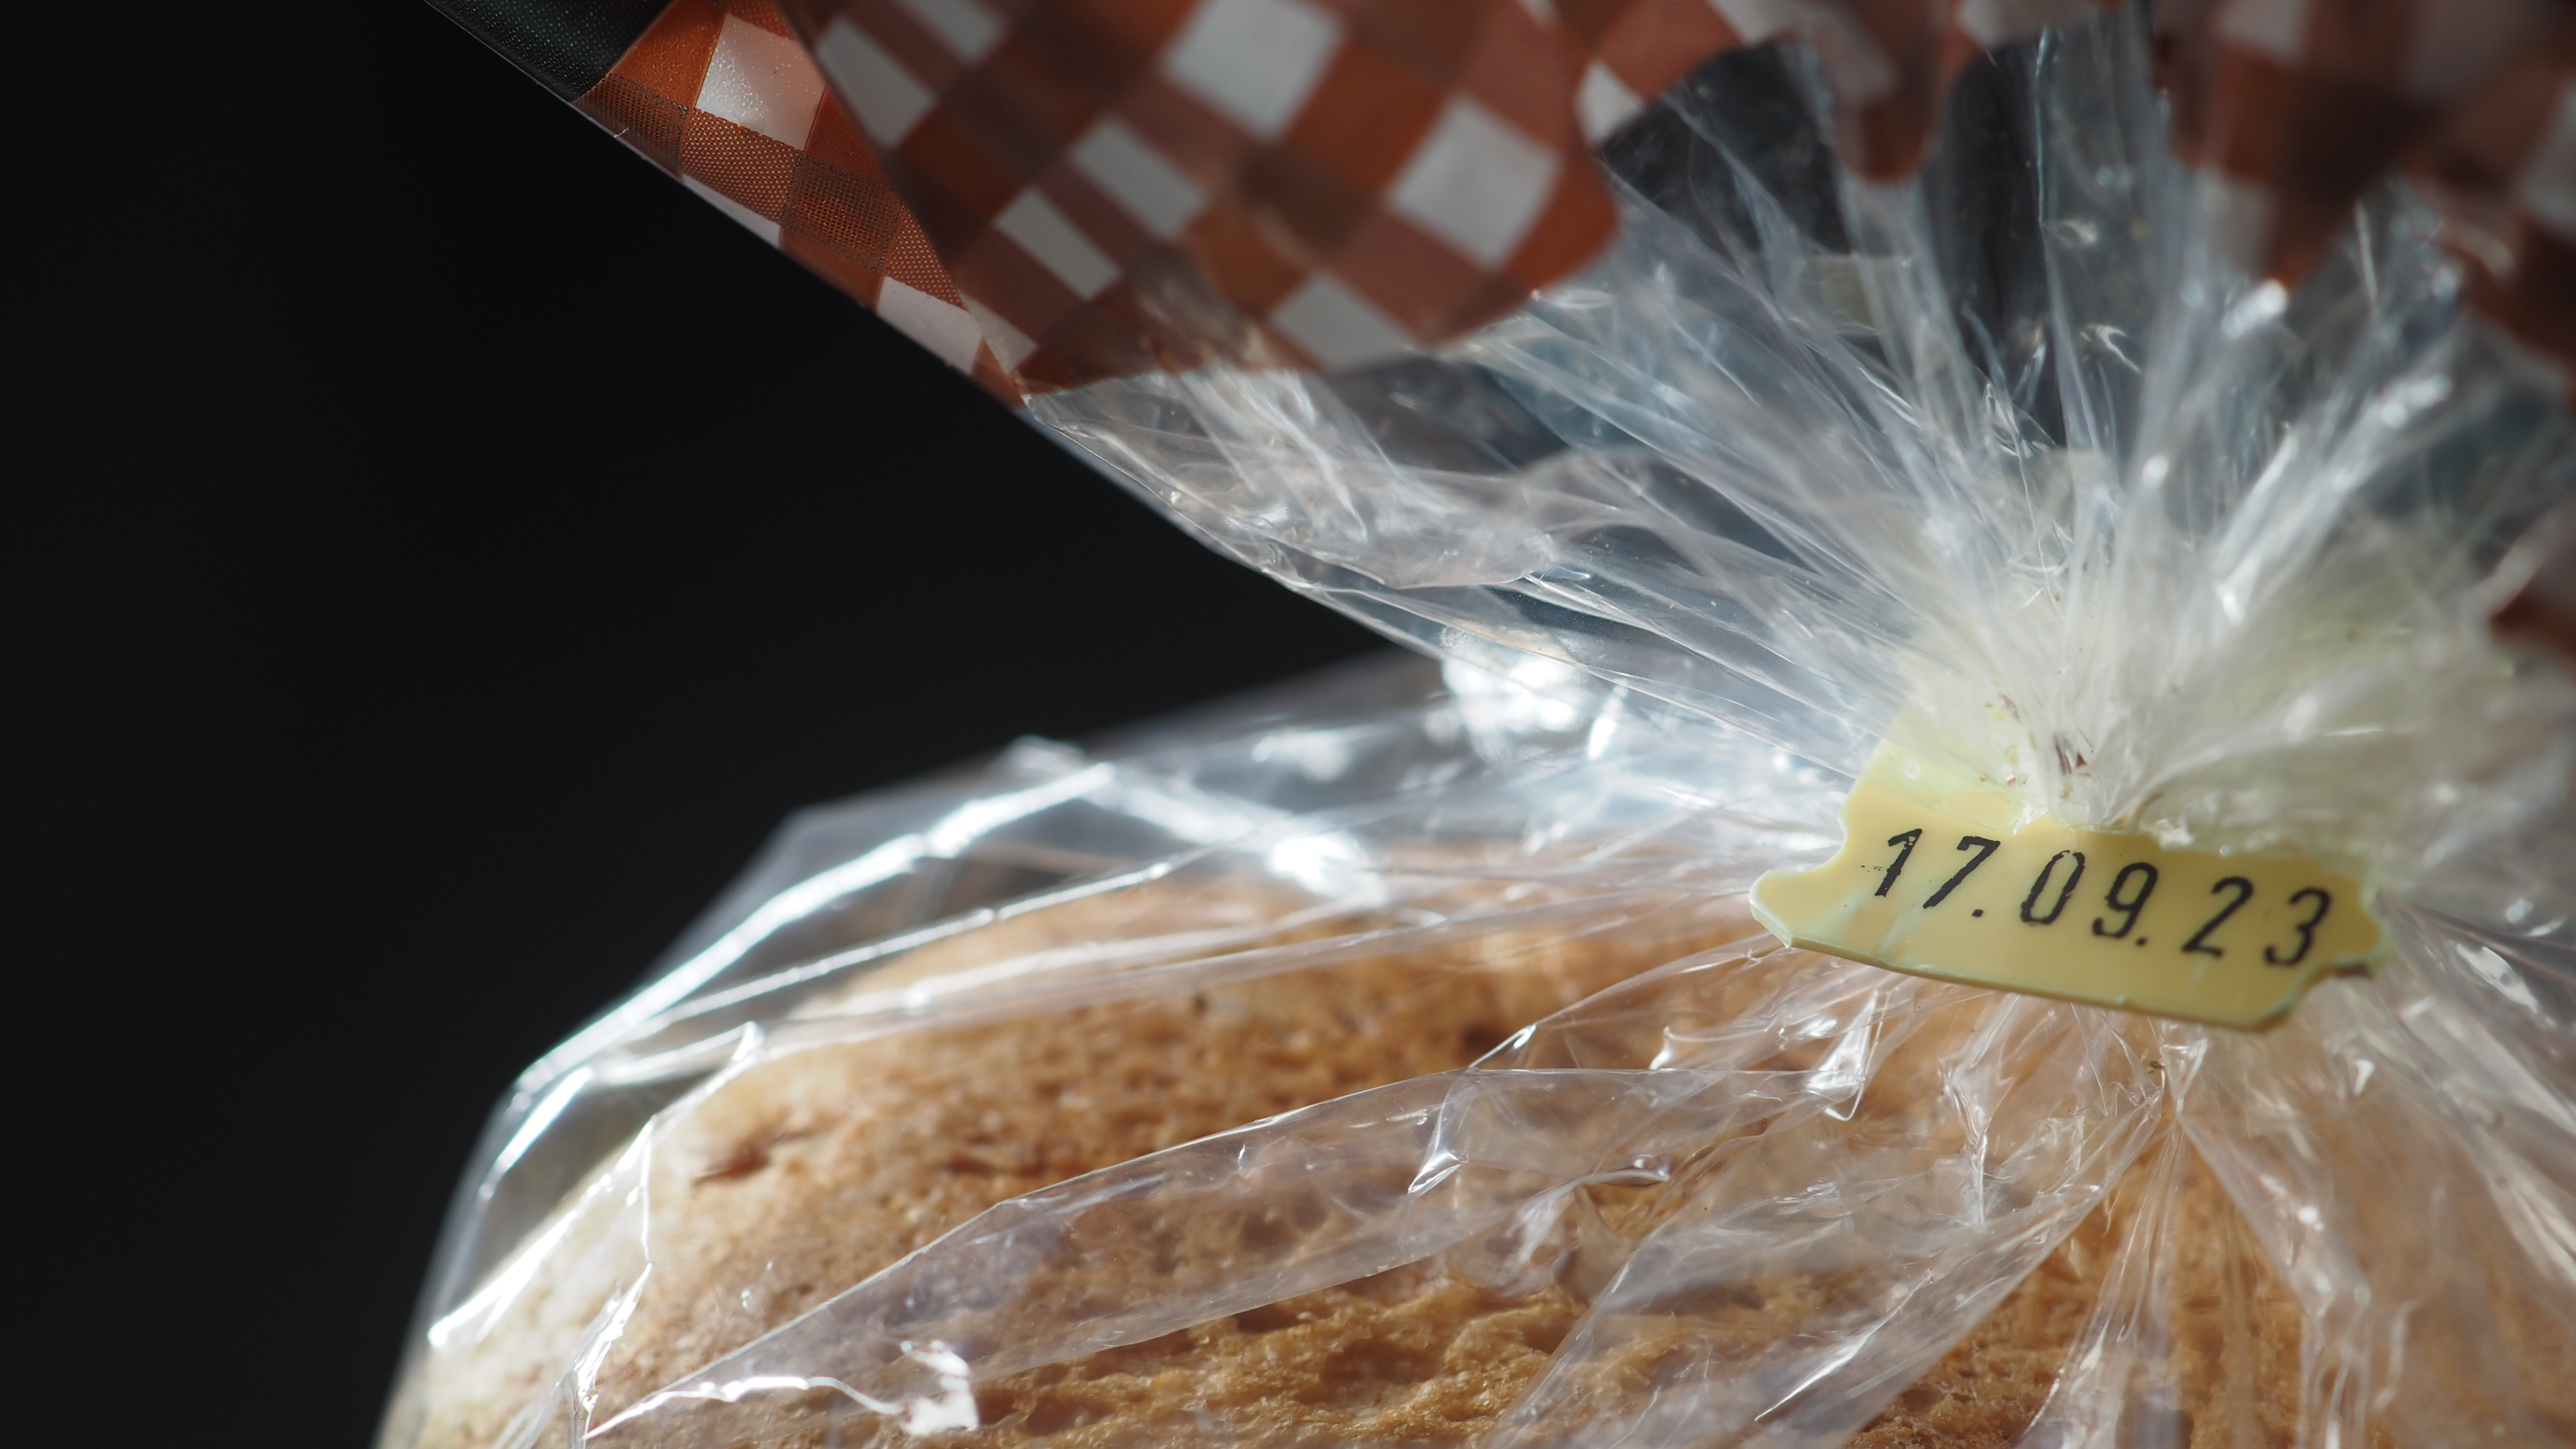 Uma embalagem de pão com validade até 17.09.2023